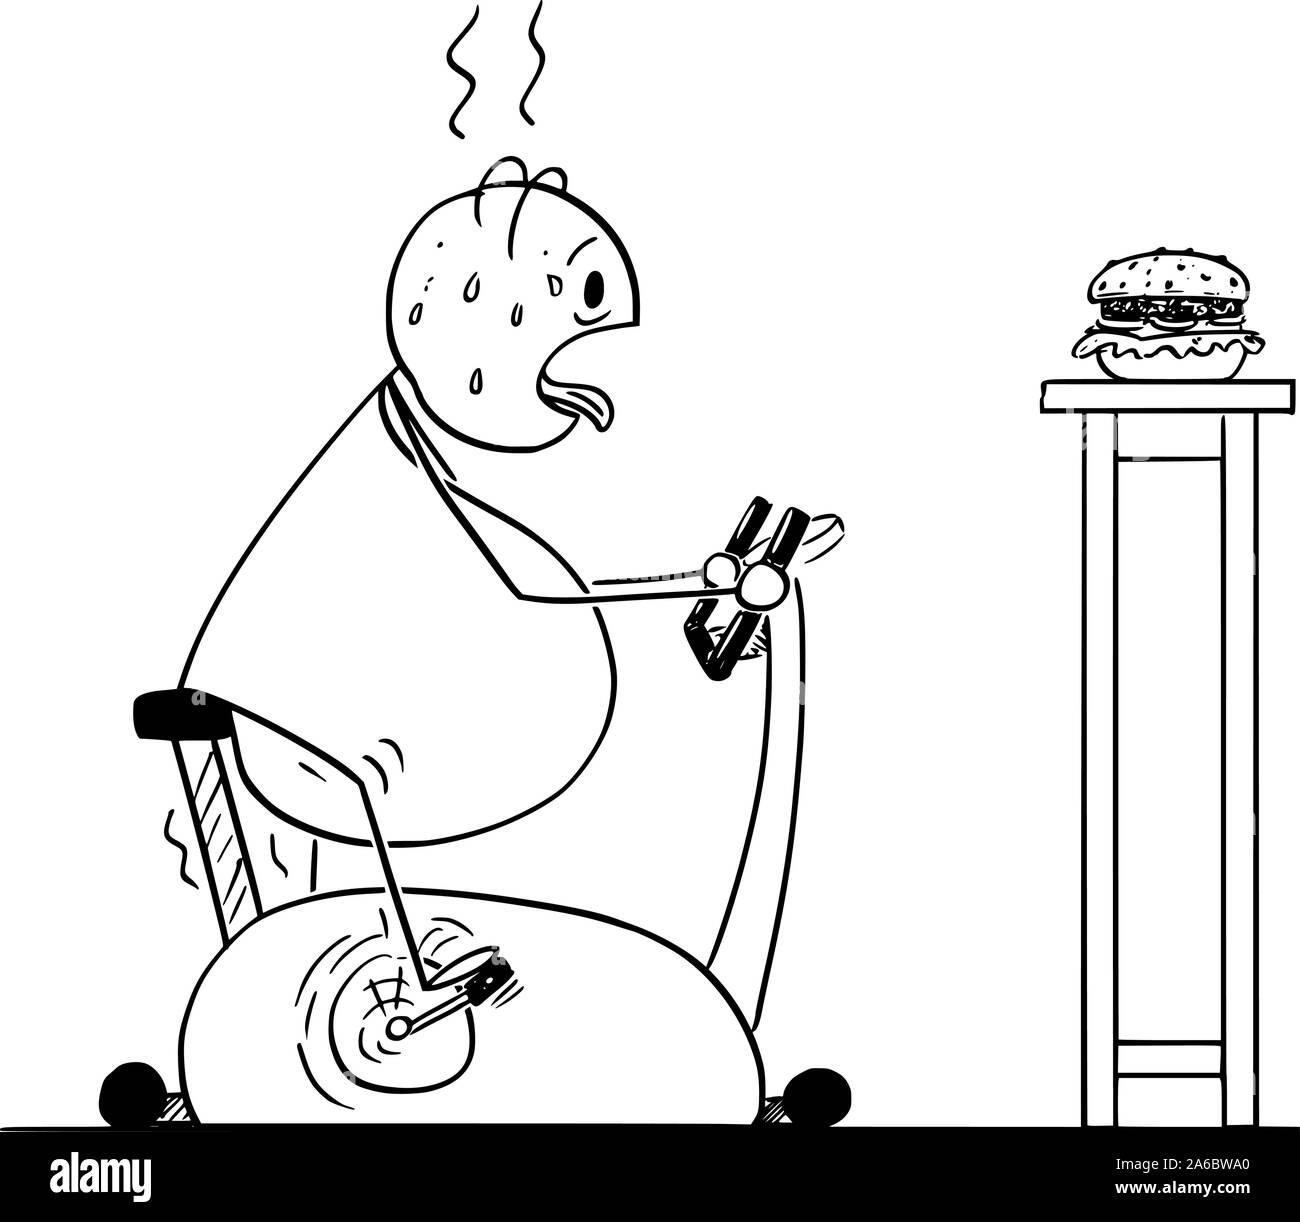 Vektor cartoon Strichmännchen Zeichnung konzeptuelle Darstellung von Fett oder übergewichtige Menschen reiten Heimtrainer oder stationären Fahrrad und suchen bei Burger. Konzept der gesunden Lebensweise. Stock Vektor